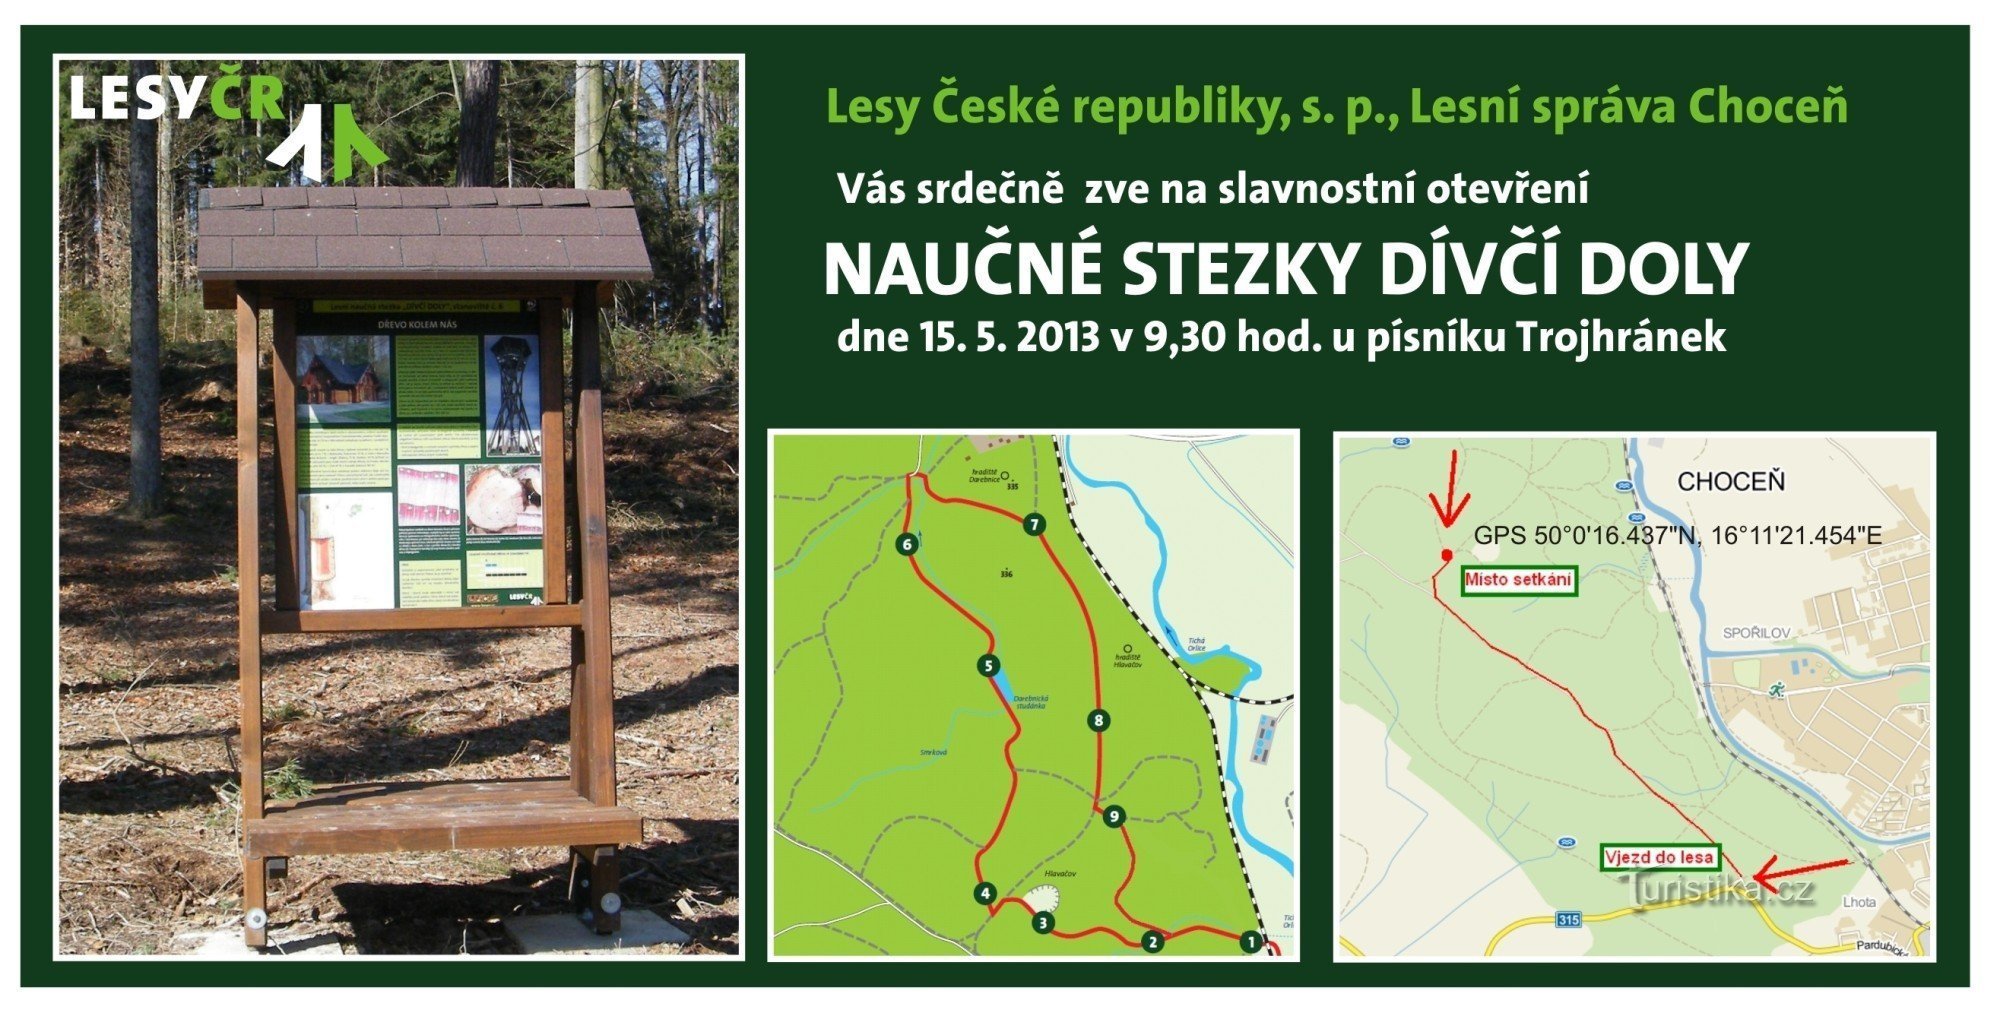 Trong Choceňsko Lesy ČR mở ra một con đường giáo dục mới Dívčí doly